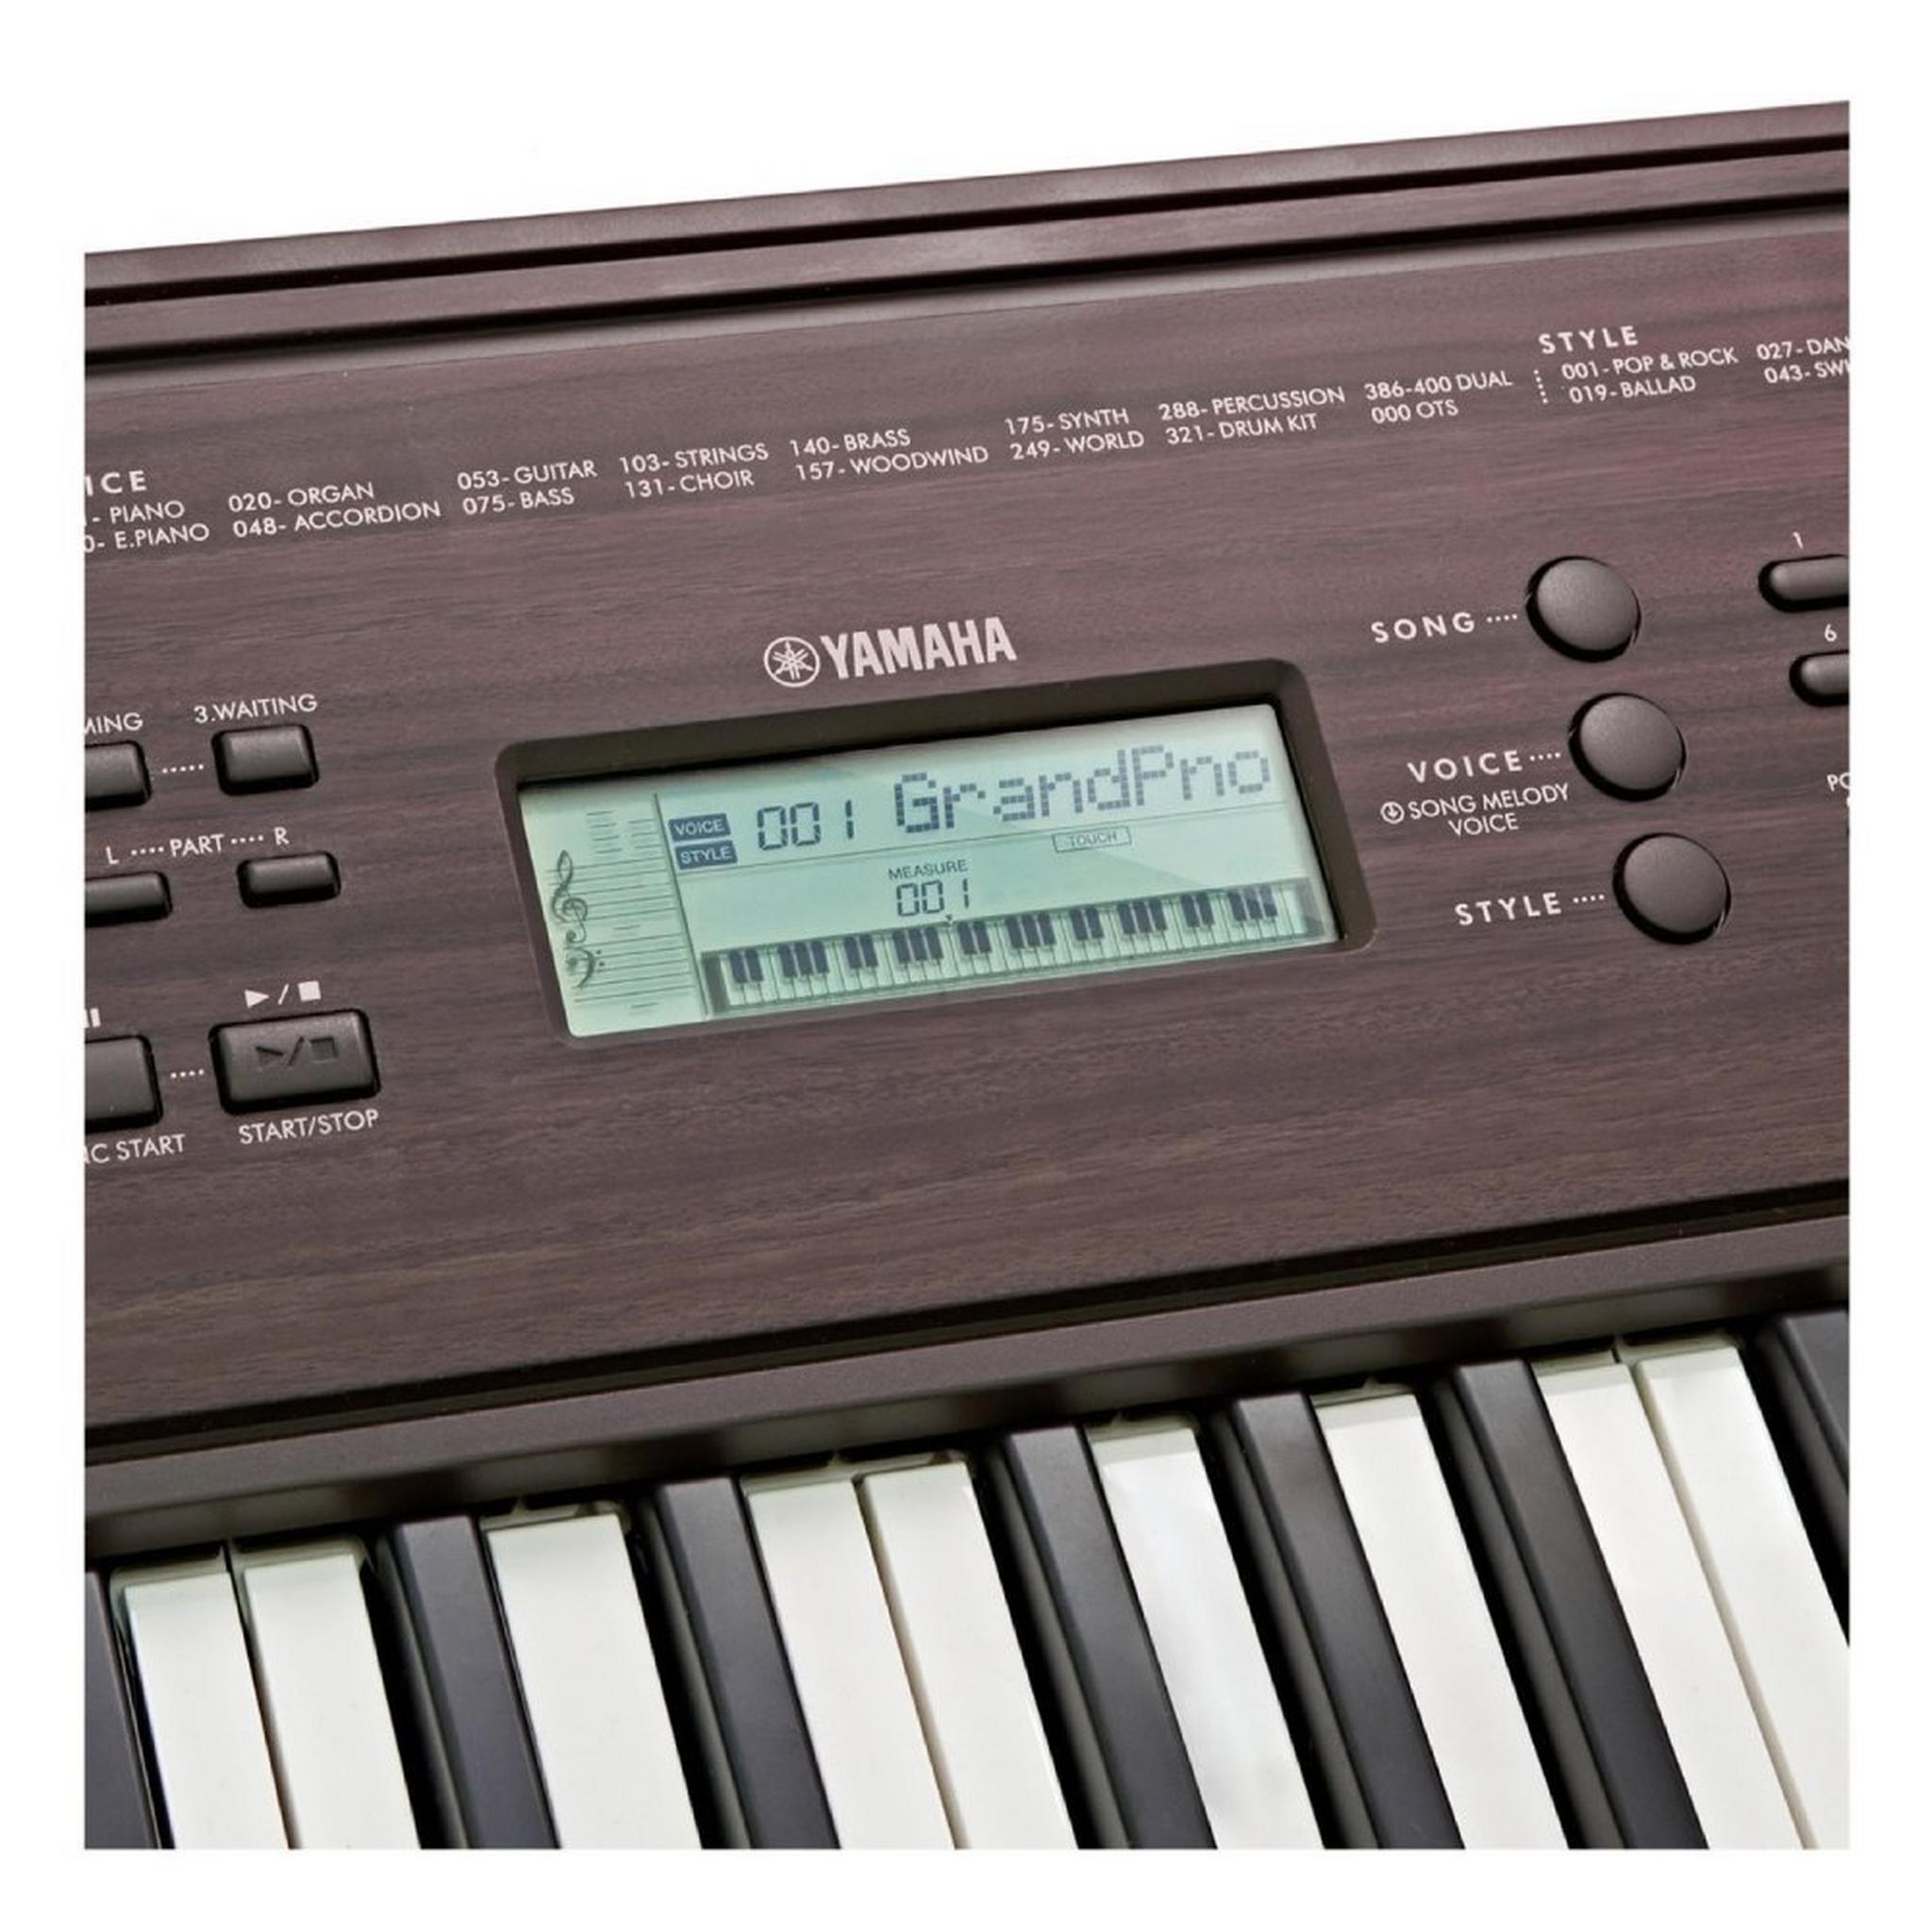 Yamaha Portable Keyboard 61 Keys (PSR-E360DW) Dark Walnut